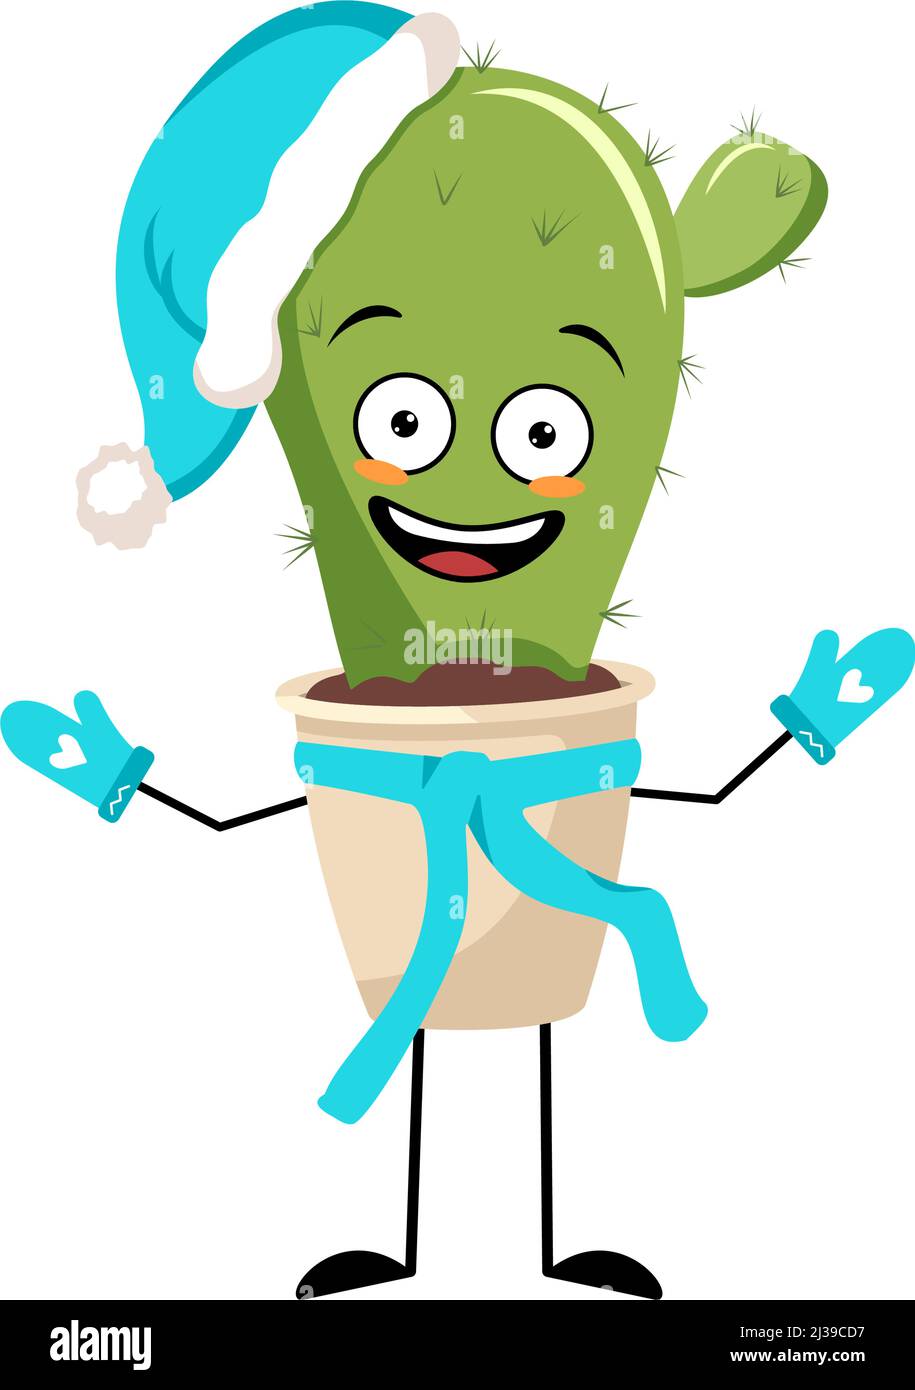 Niedlicher Kaktus-Charakter im Topf im Weihnachtsmütze mit fröhlicher Emotion, fröhlichem Gesicht, lächelnden Augen, Armen und Beinen. Zimmerpflanze mit witzigem Ausdruck und Pose. Vektorgrafik flach Stock Vektor